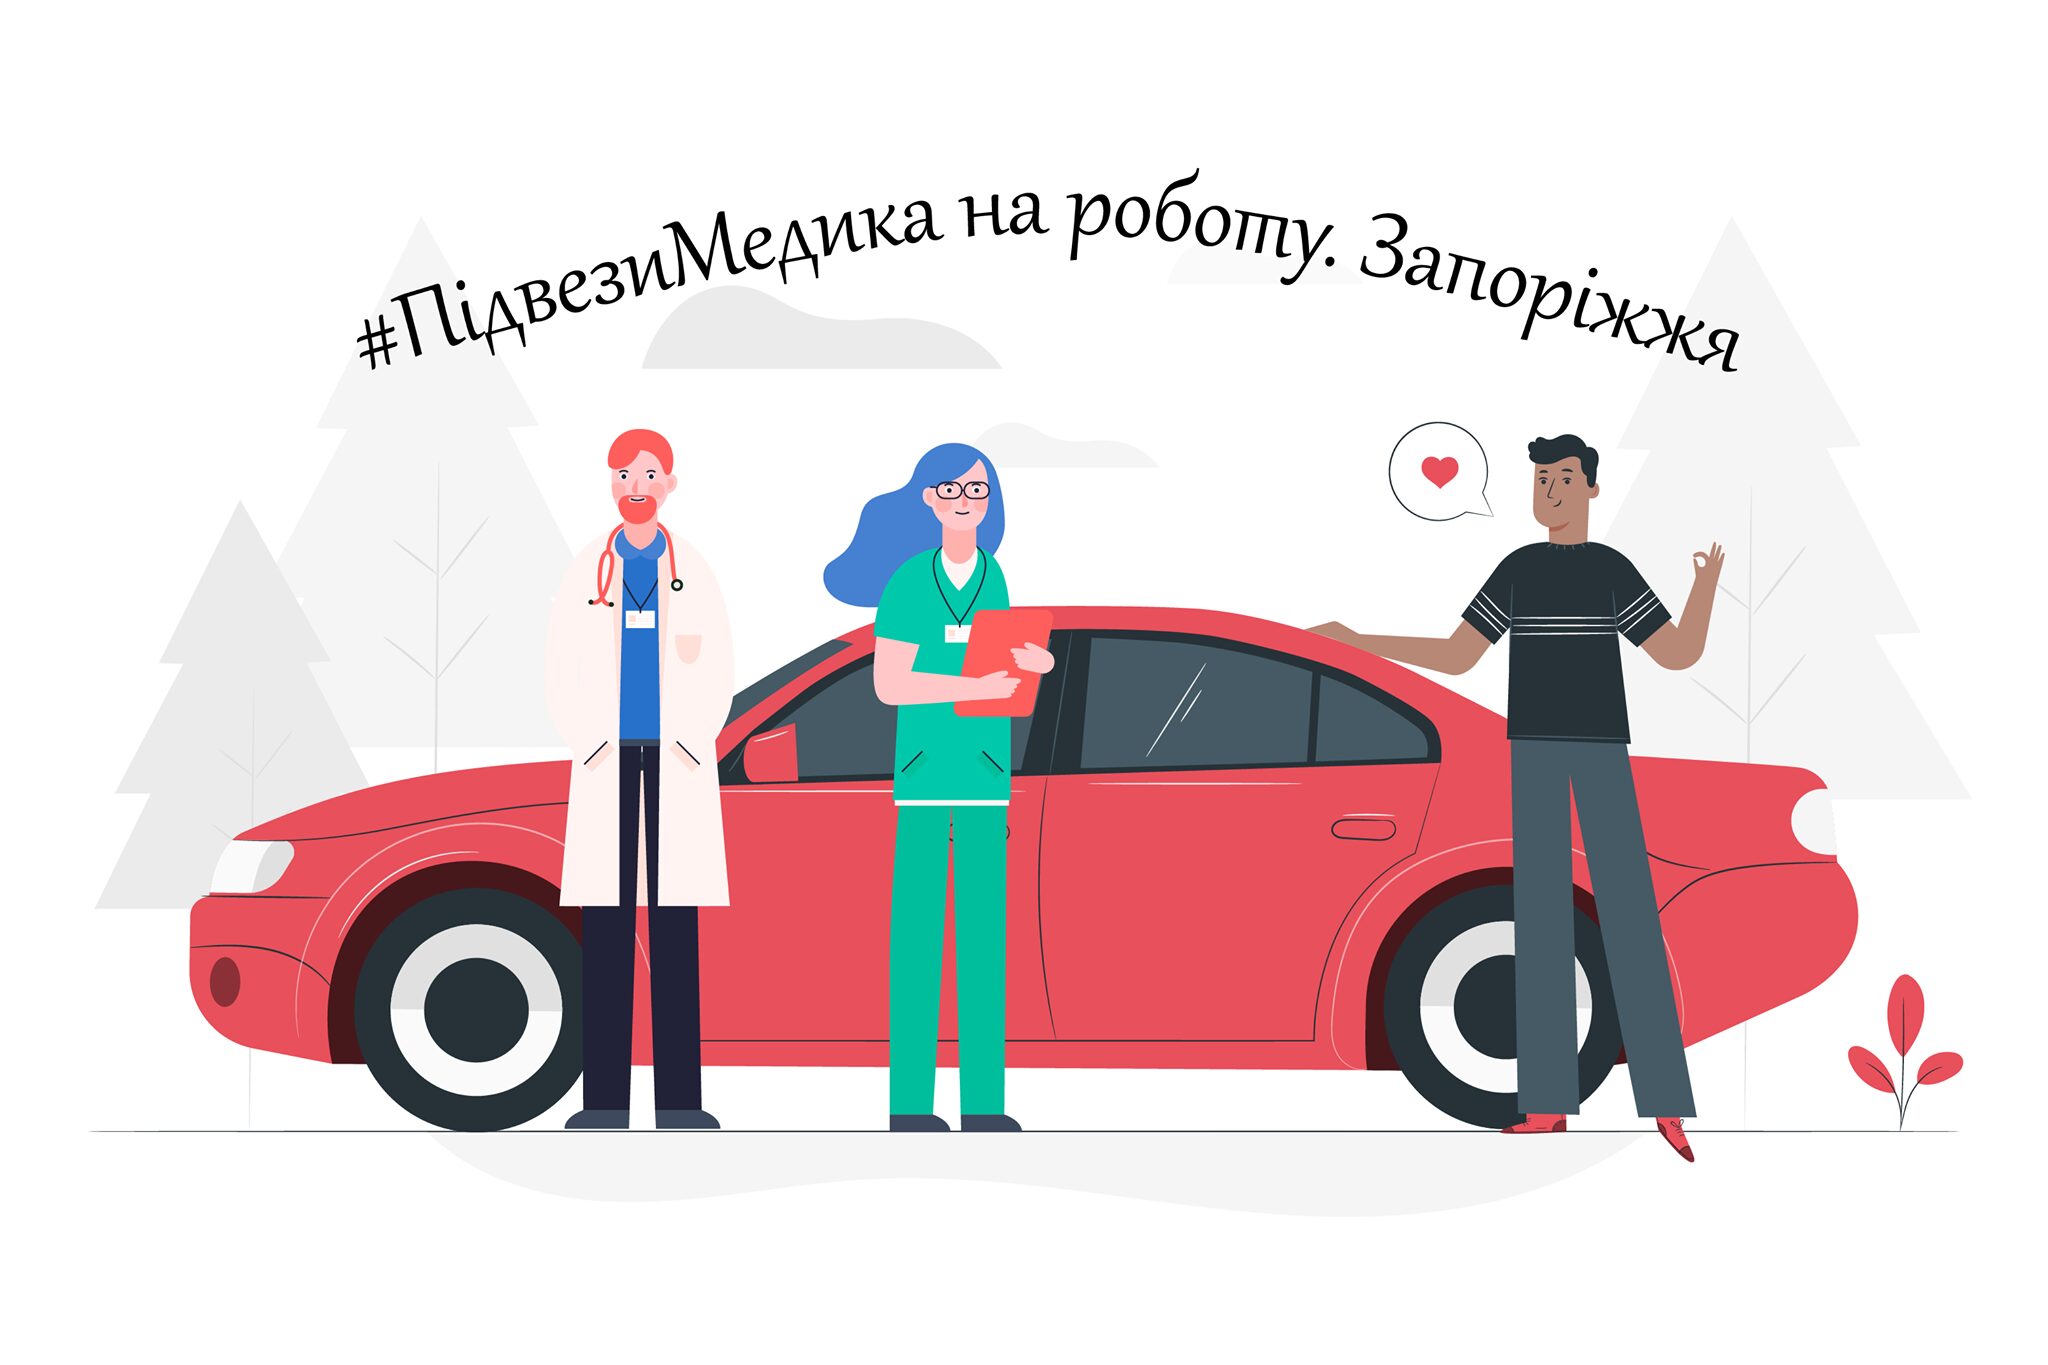 В Запорожье стартовала акция “Подвези медика на работу”: заявки подали более 60 человек 